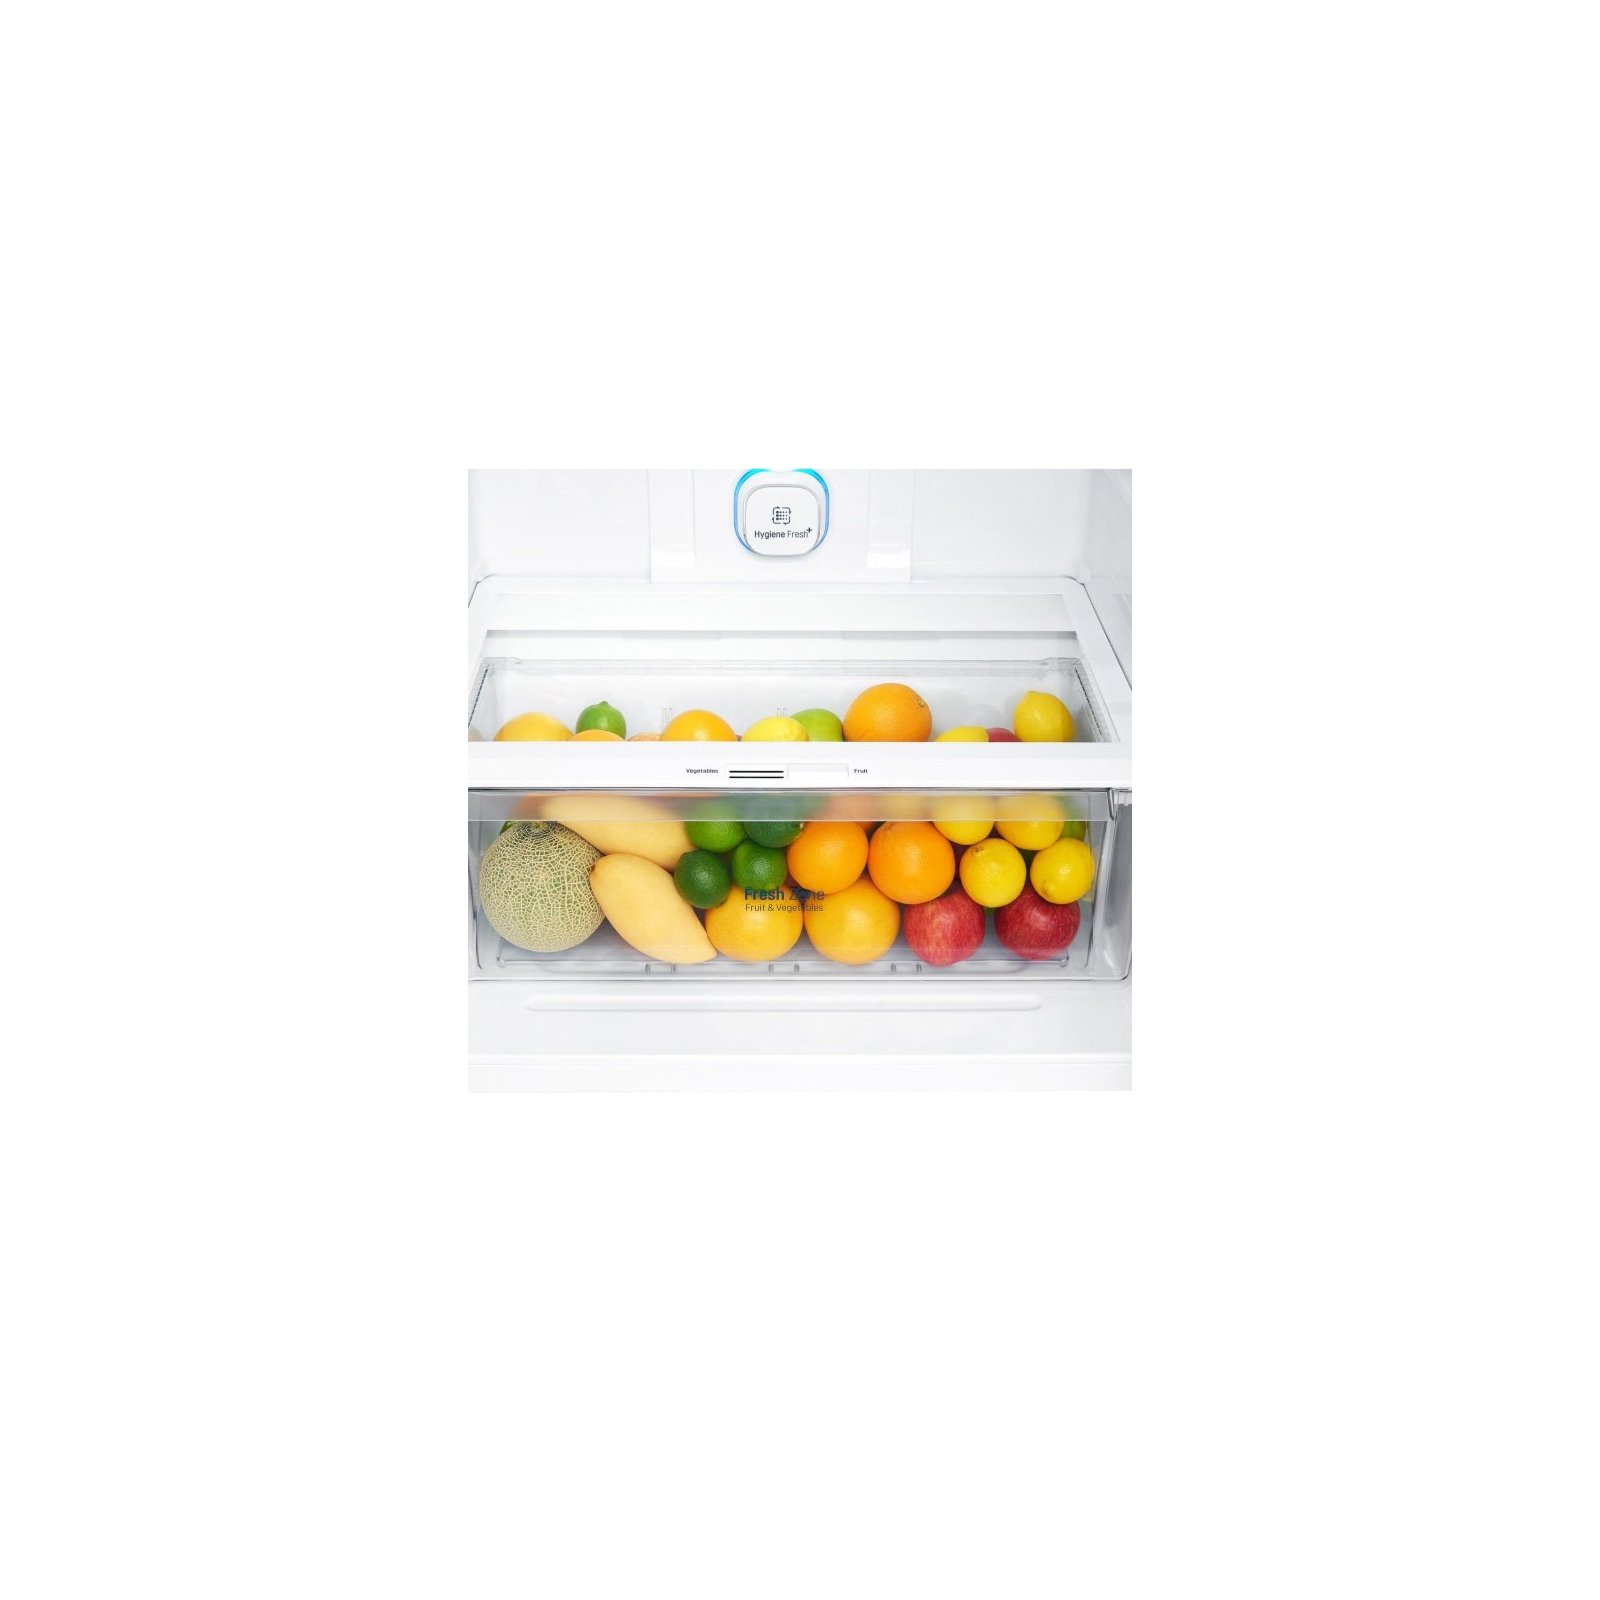 Холодильник LG GN-H702HEHZ изображение 7